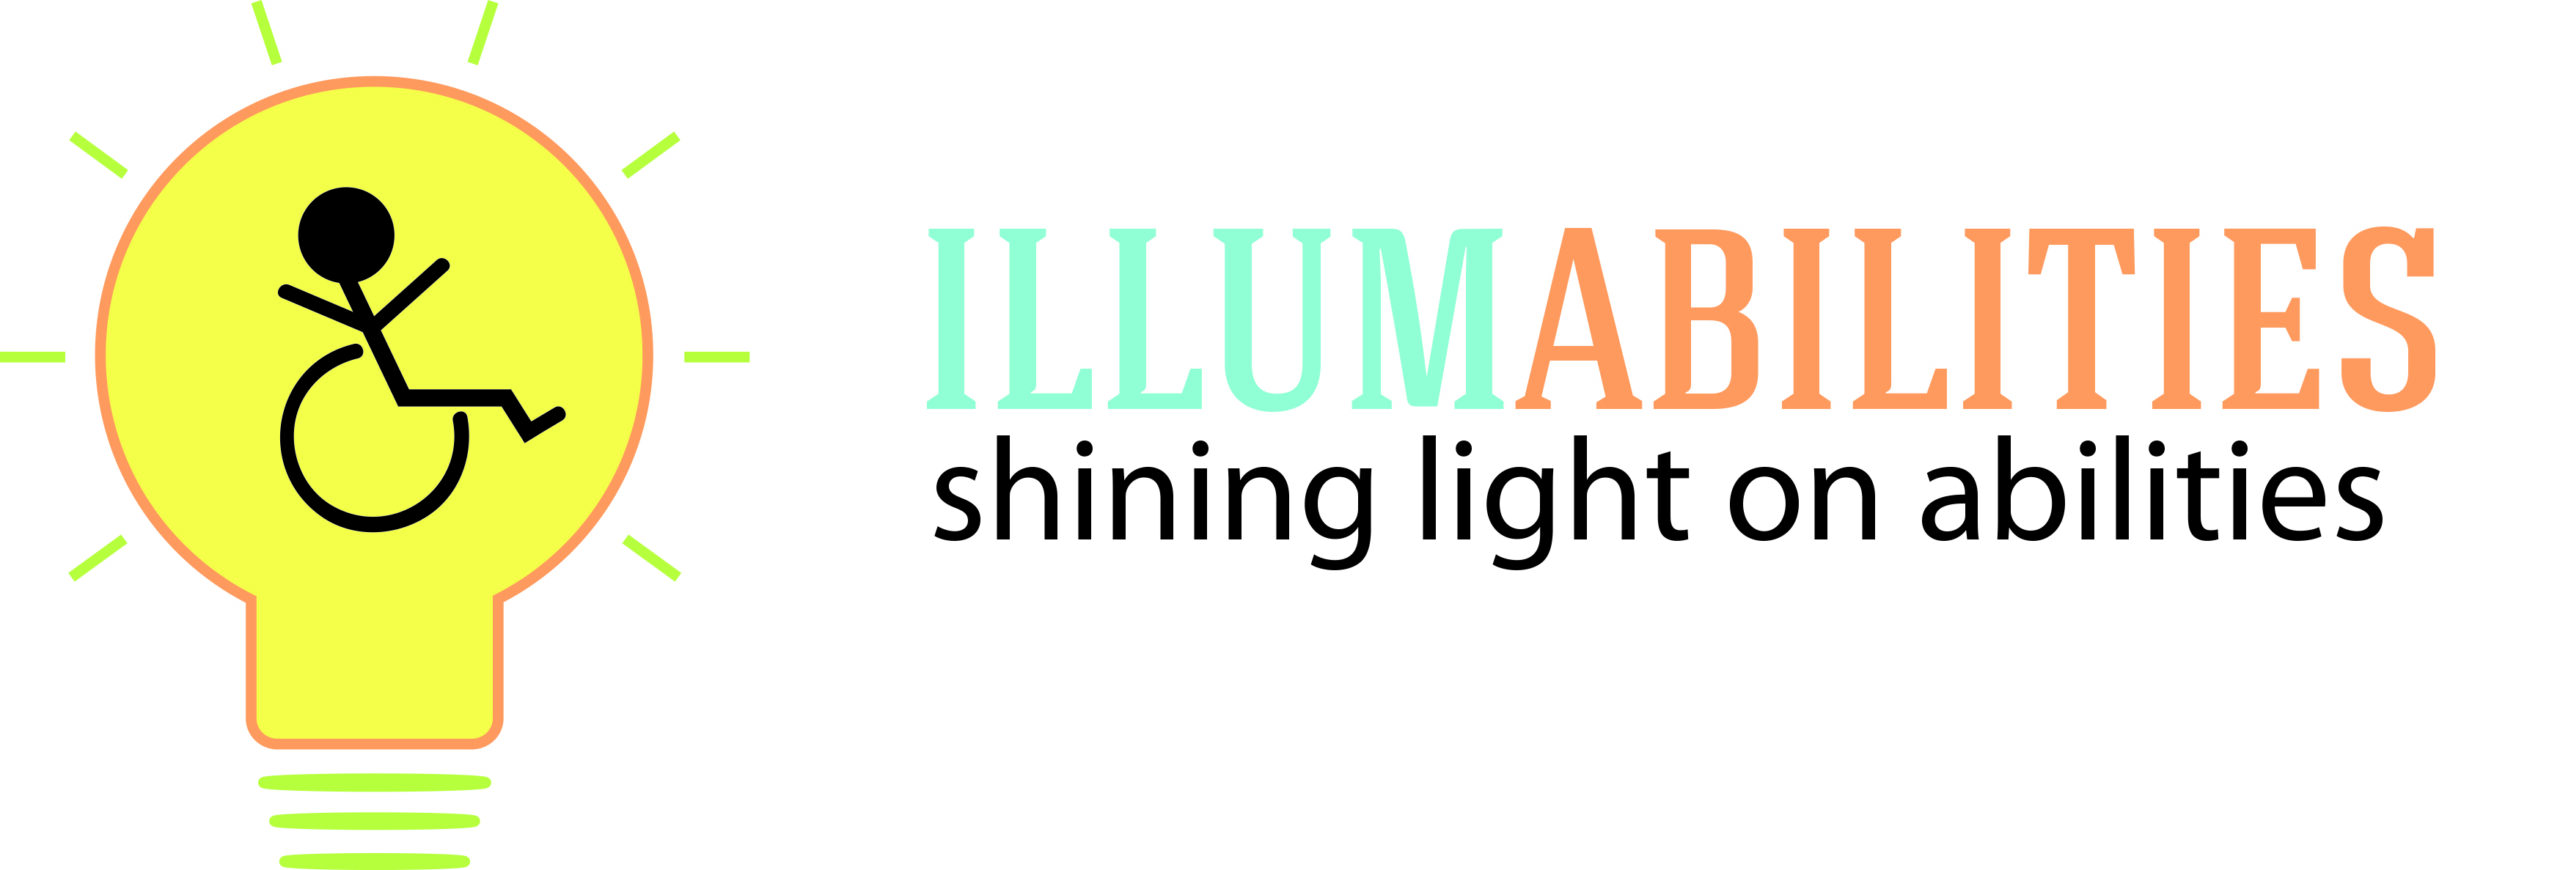 Illumabilities - Shining Light on Abilities.